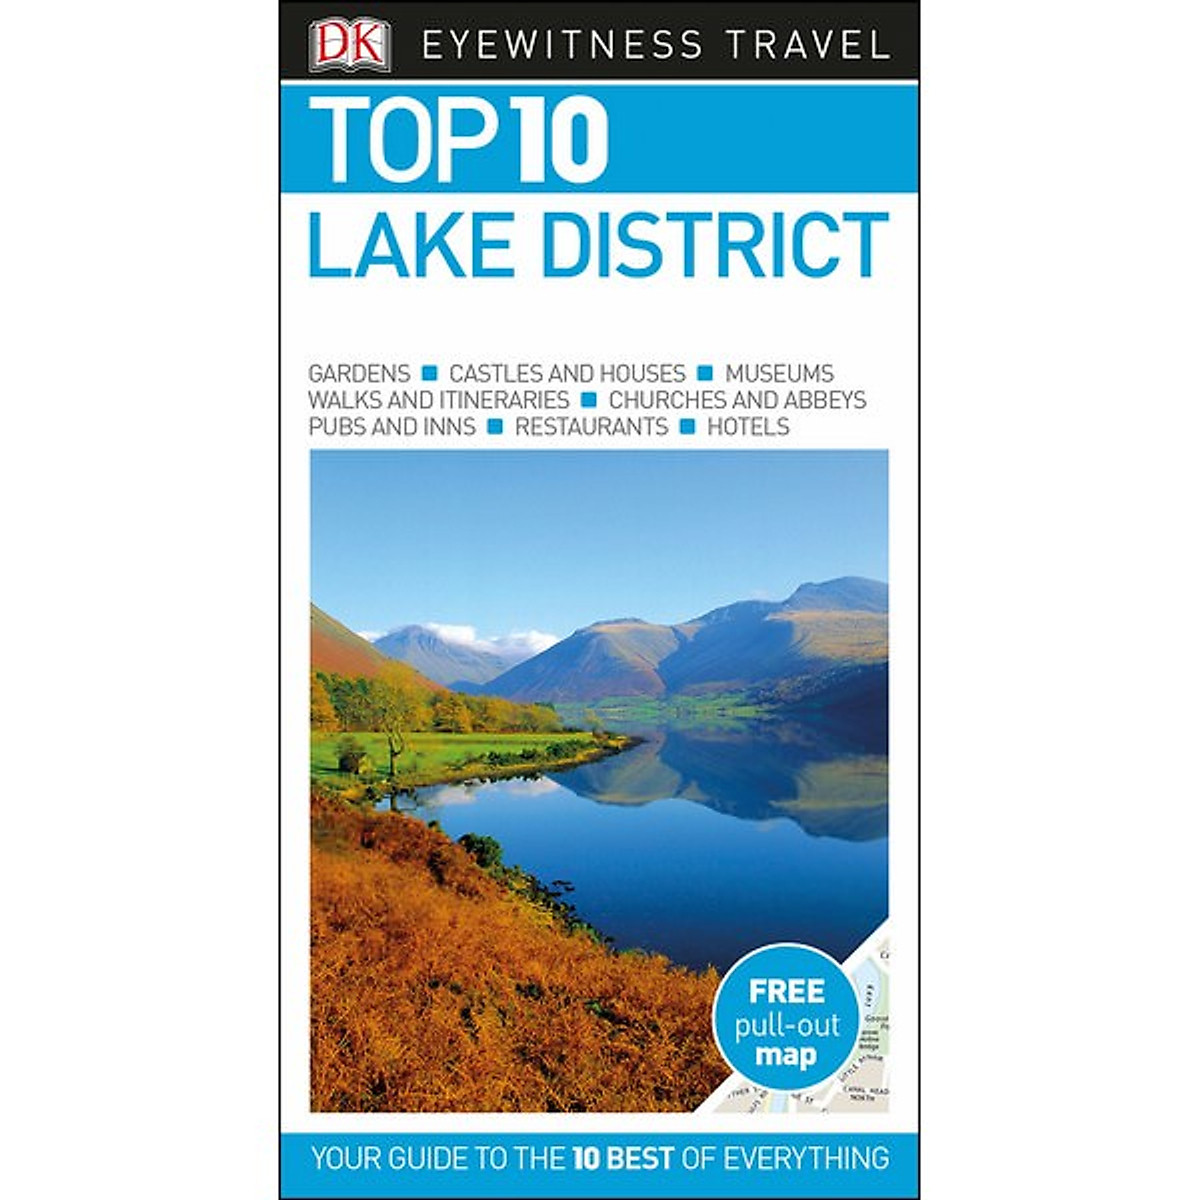 [Hàng thanh lý miễn đổi trả] DK Eyewitness Top 10 Lake District